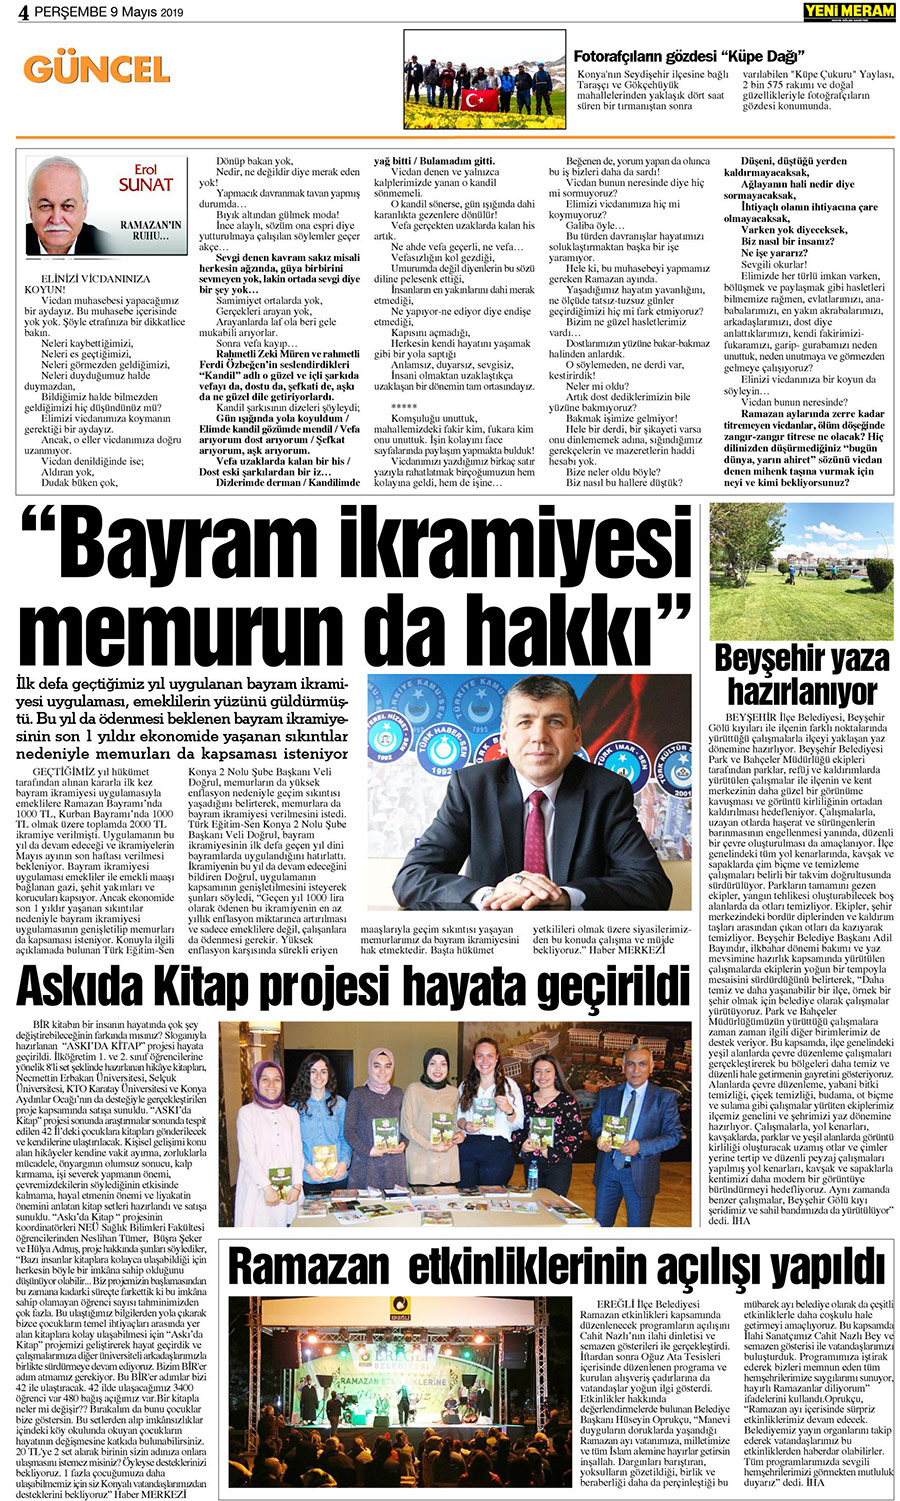 9 Mayıs 2019 Yeni Meram Gazetesi